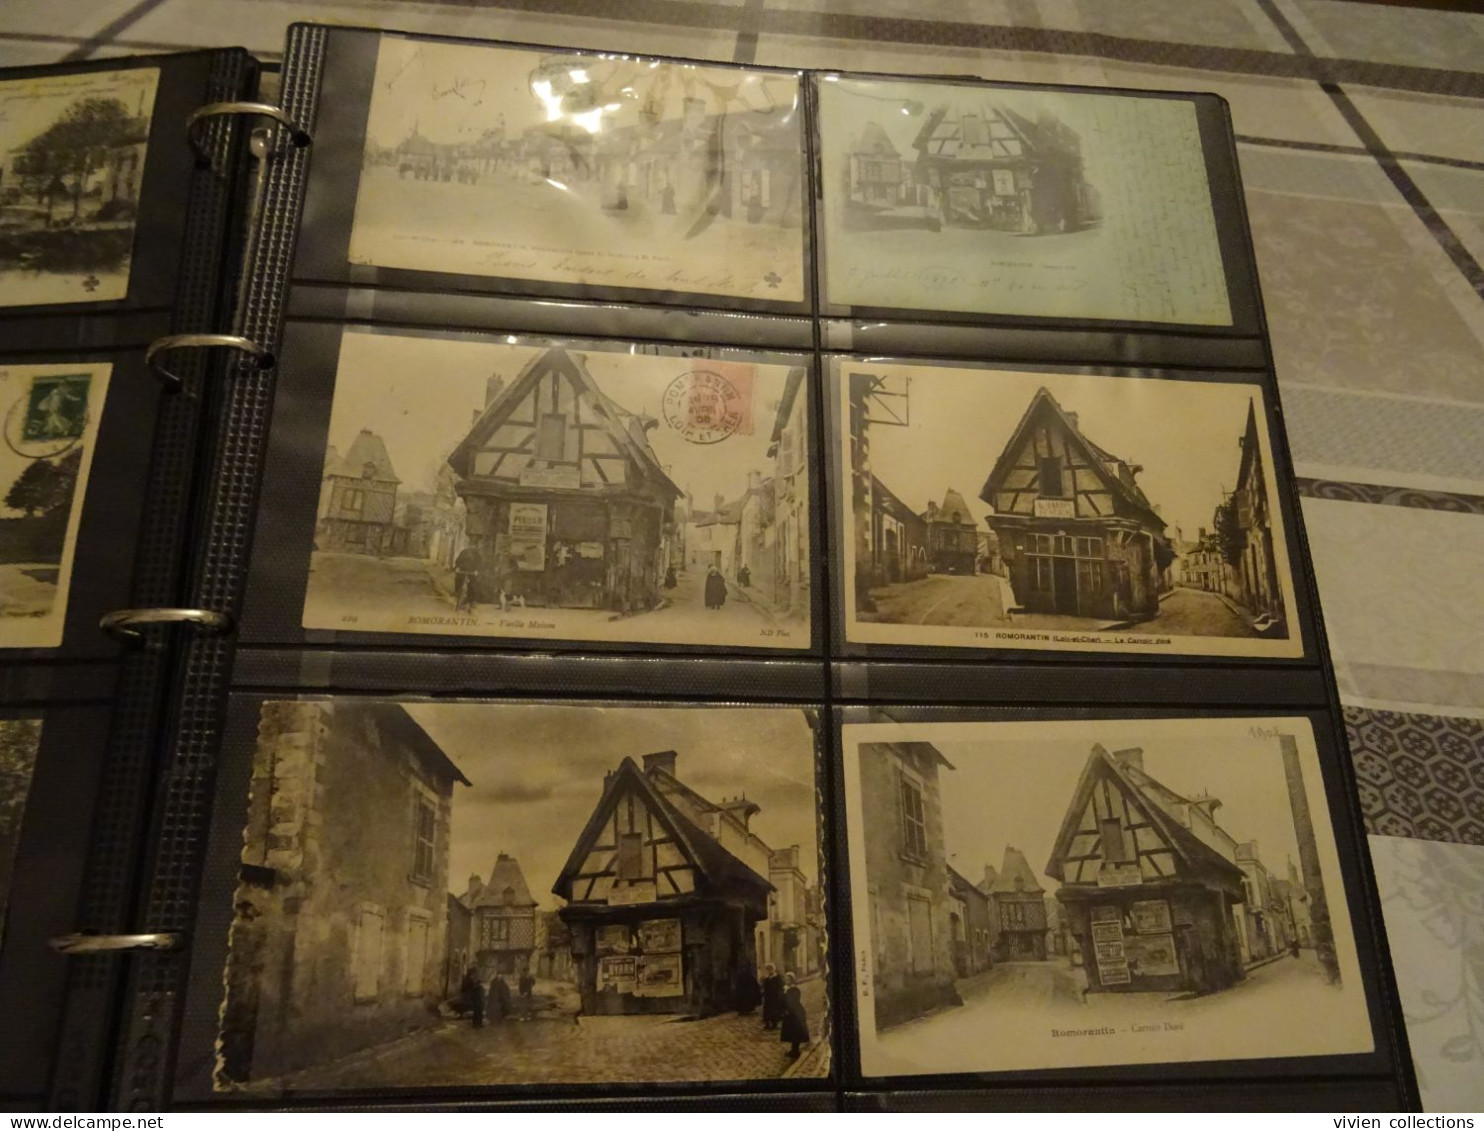 Collection de cartes du Loir et Cher dans un bel album robuste et en très bon état nombreuses belles animations villages